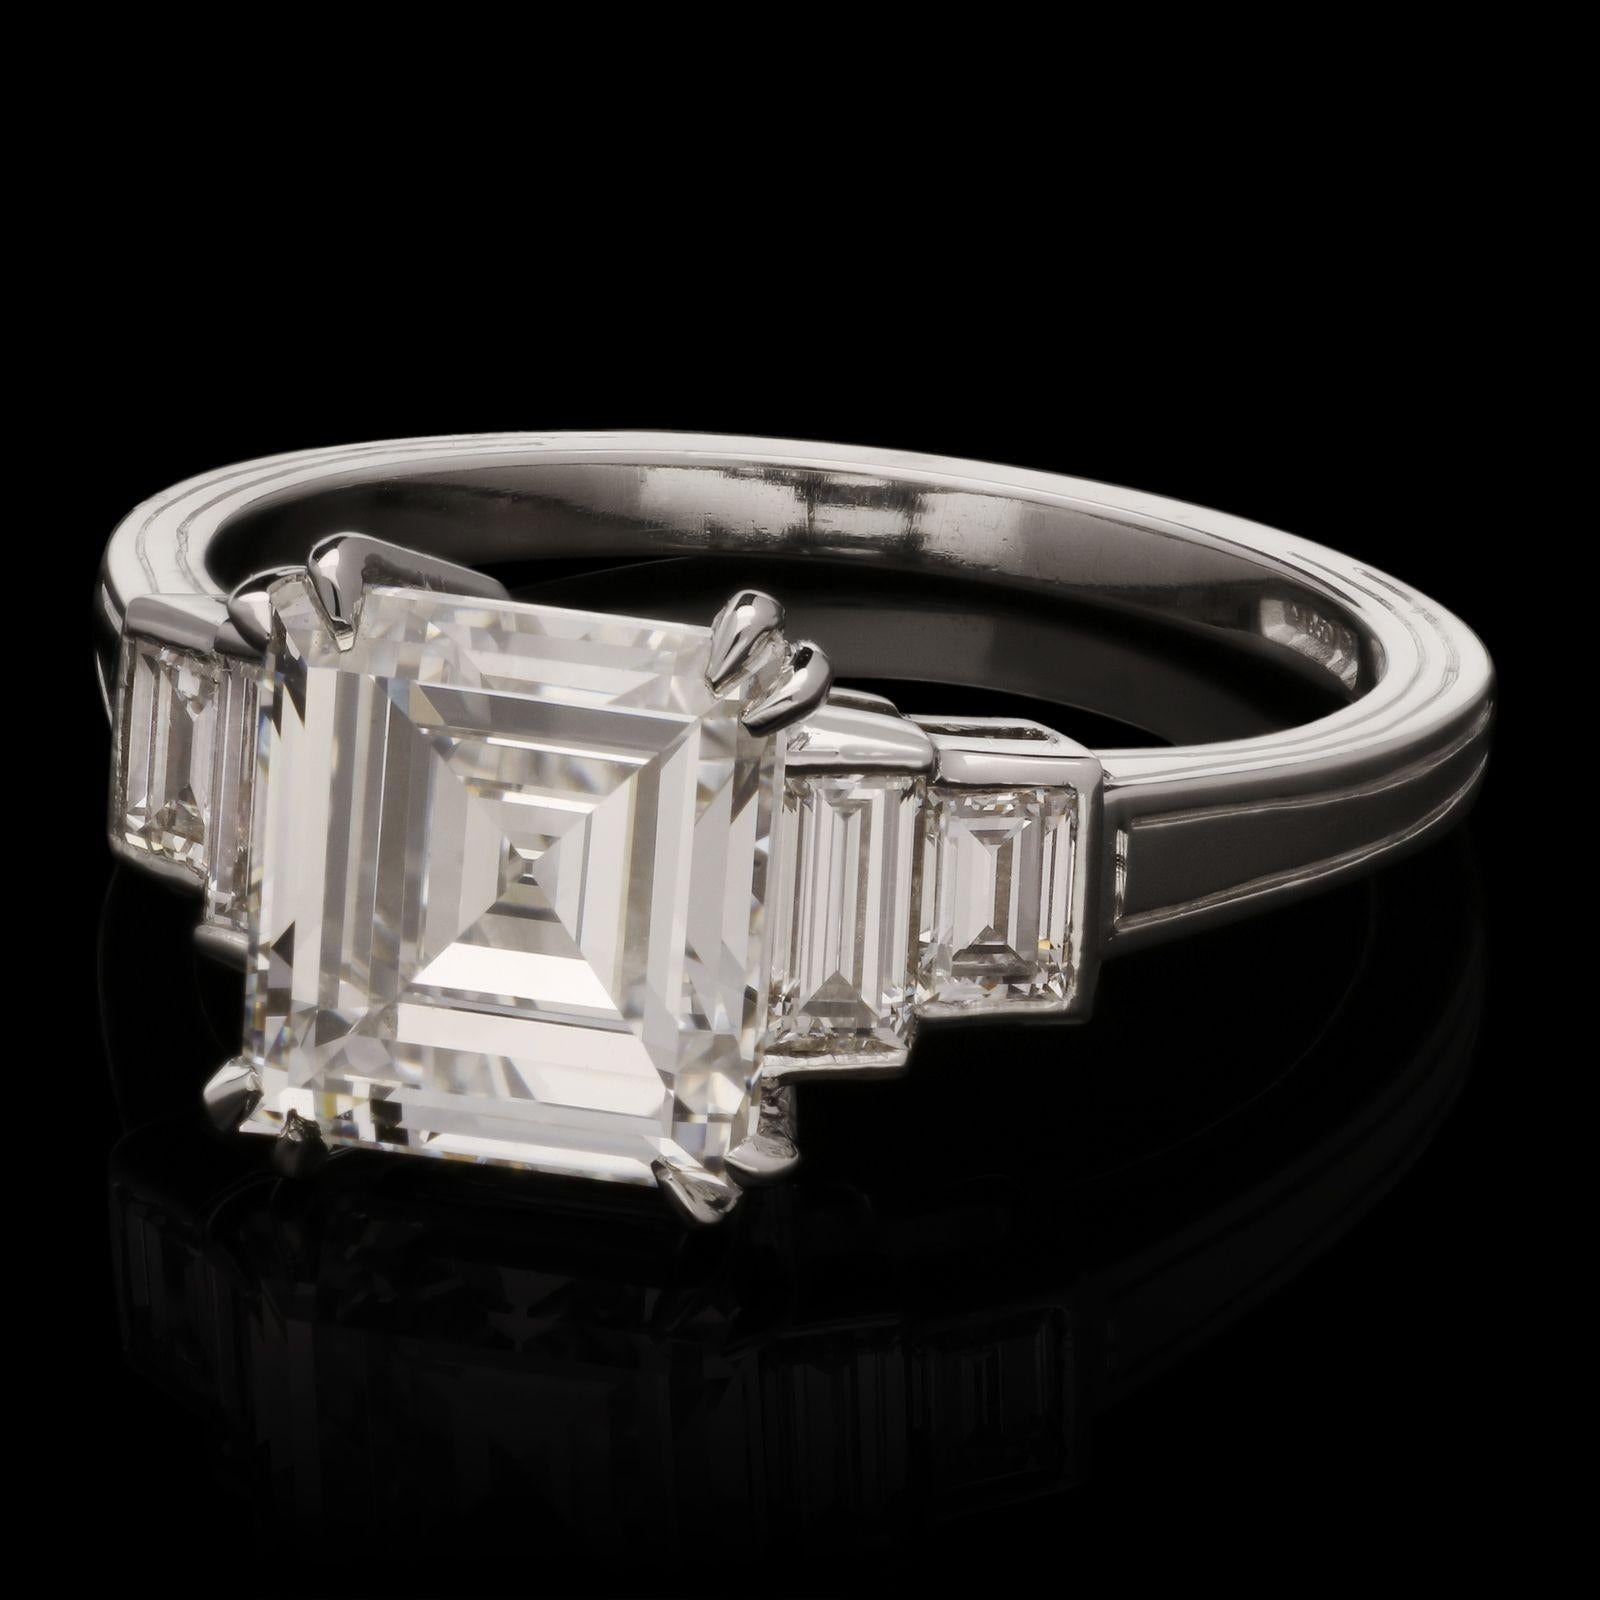 Un magnifique diamant de taille carrée pesant 2,28cts, de couleur D et de pureté VS2, serti d'une double griffe d'angle entre deux épaulements de diamants de taille baguette de chaque côté, le tout dans une monture en platine finement ouvragée avec